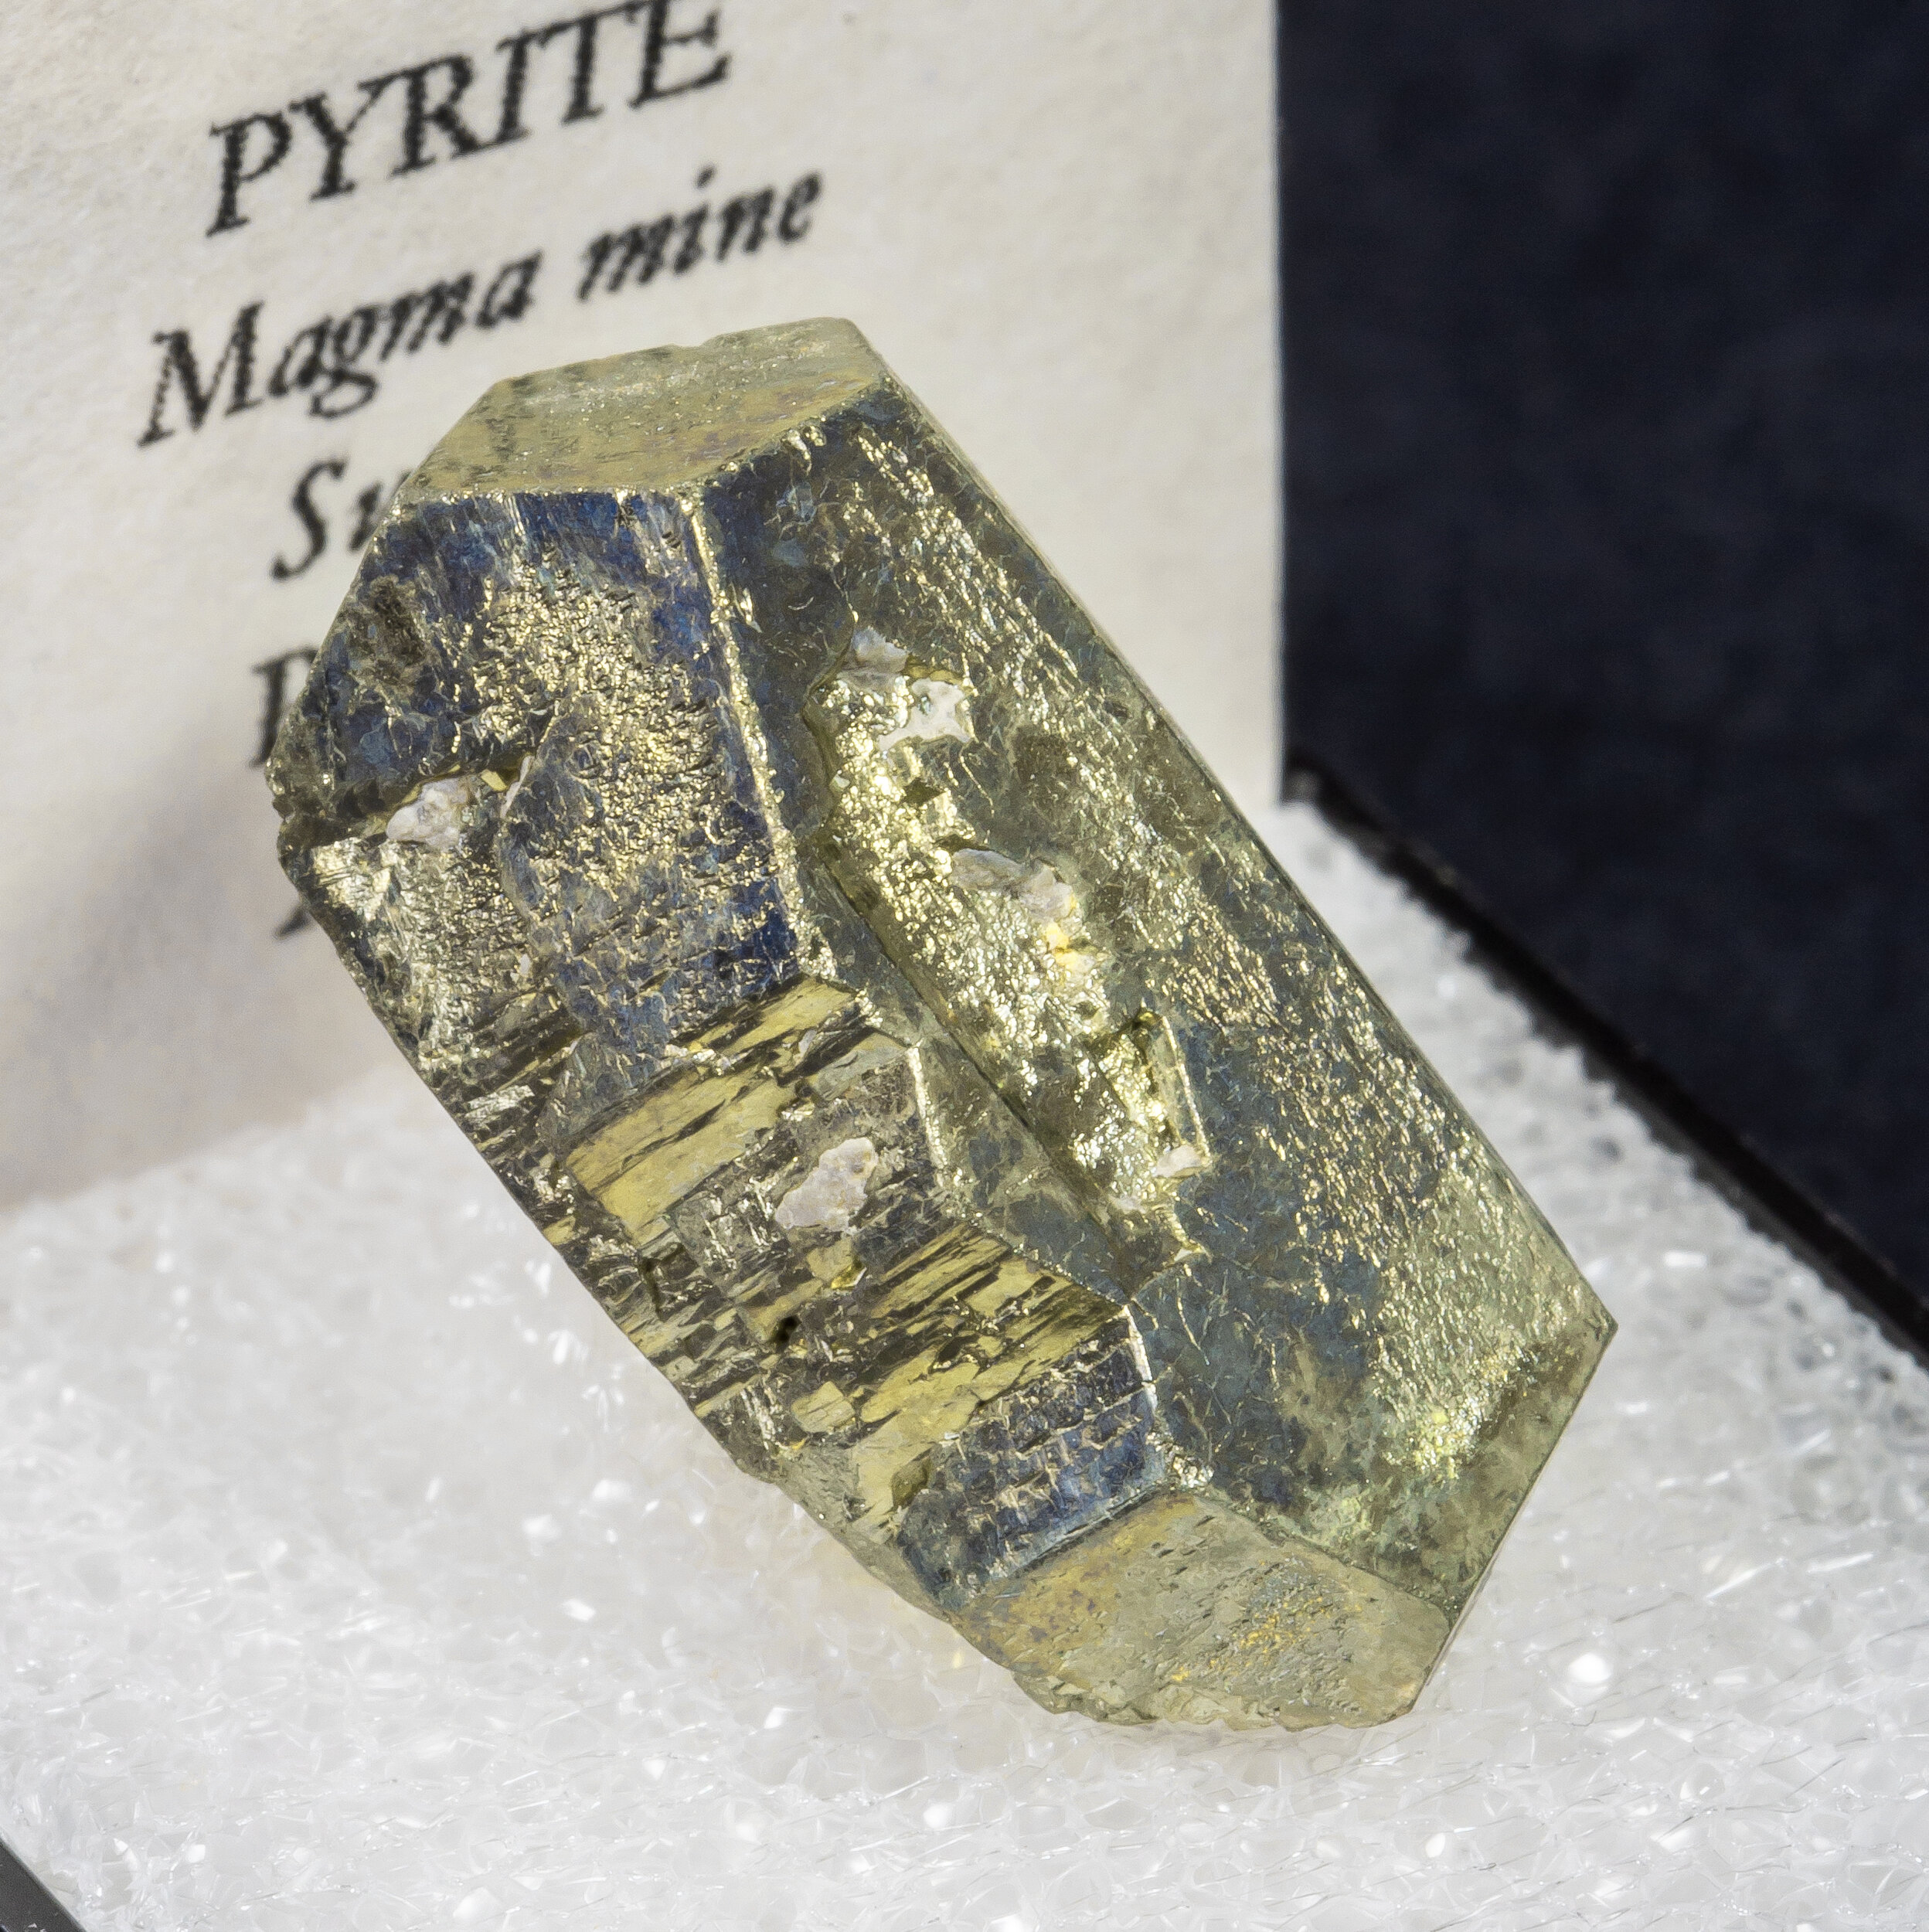 specimens/s_imagesAM7/Pyrite-MA6AM7s.jpg